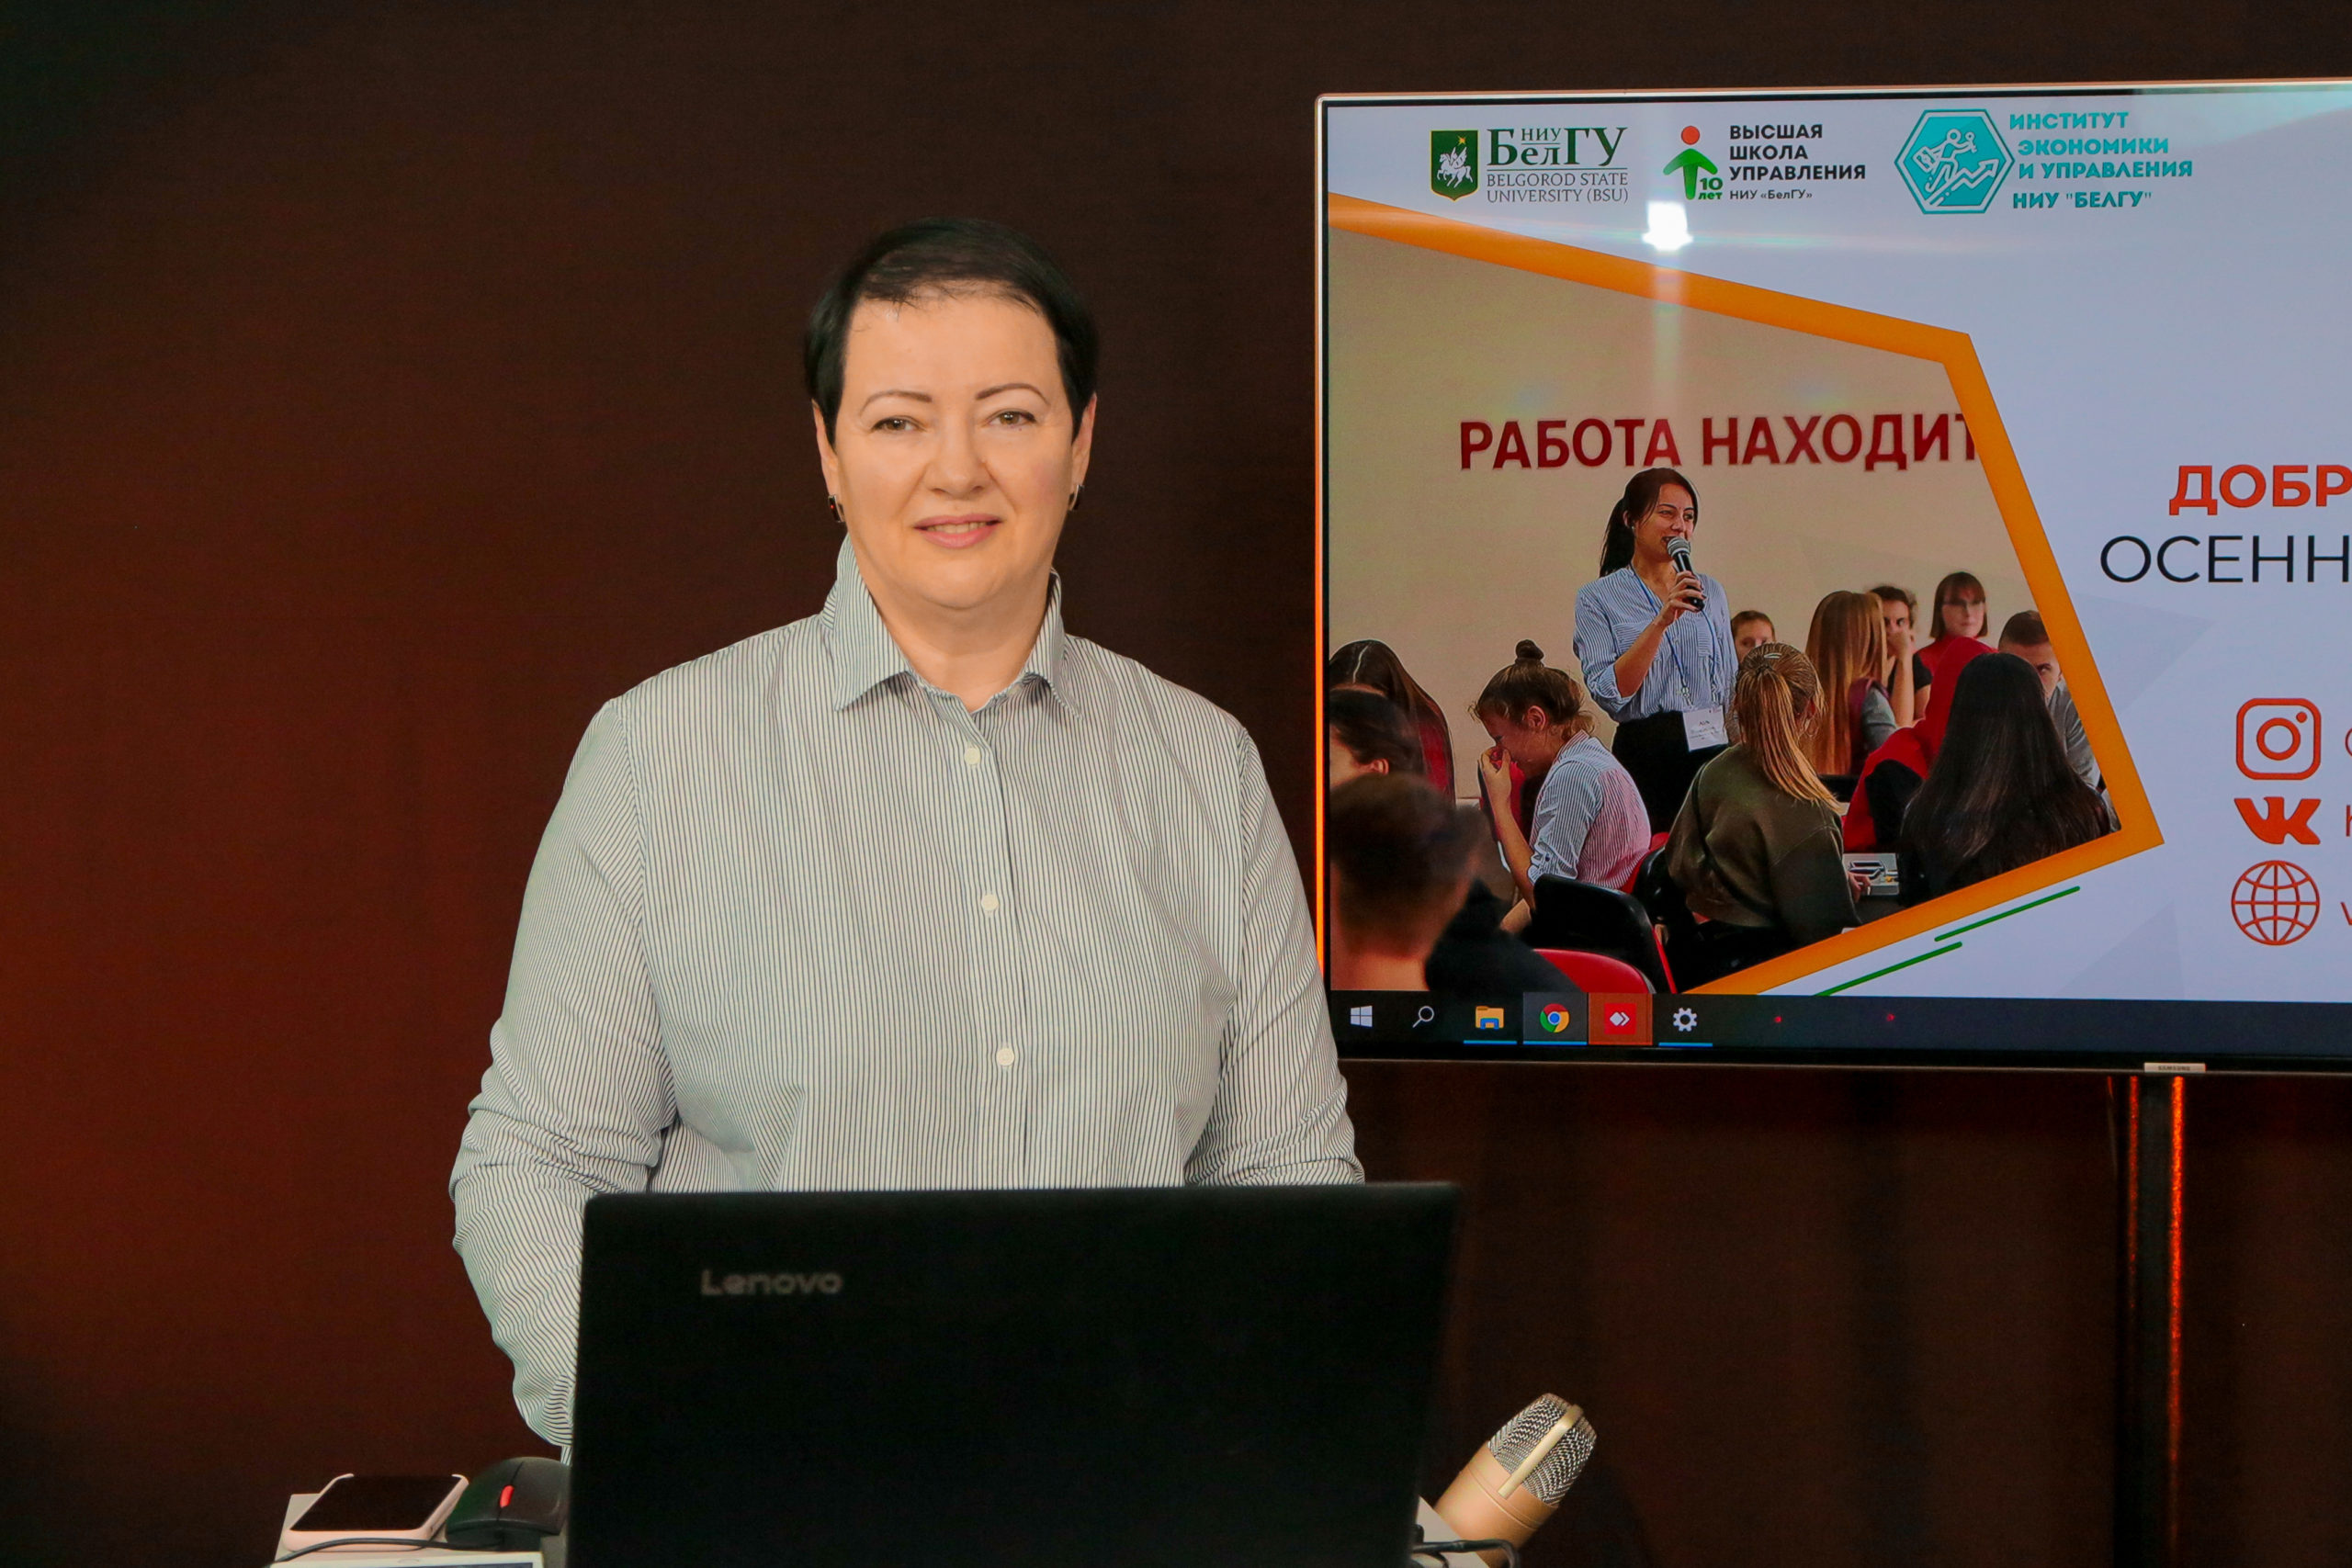 Высшая школа управления НИУ «БелГУ» приняла участие в Профориентационных каникулах для учителей